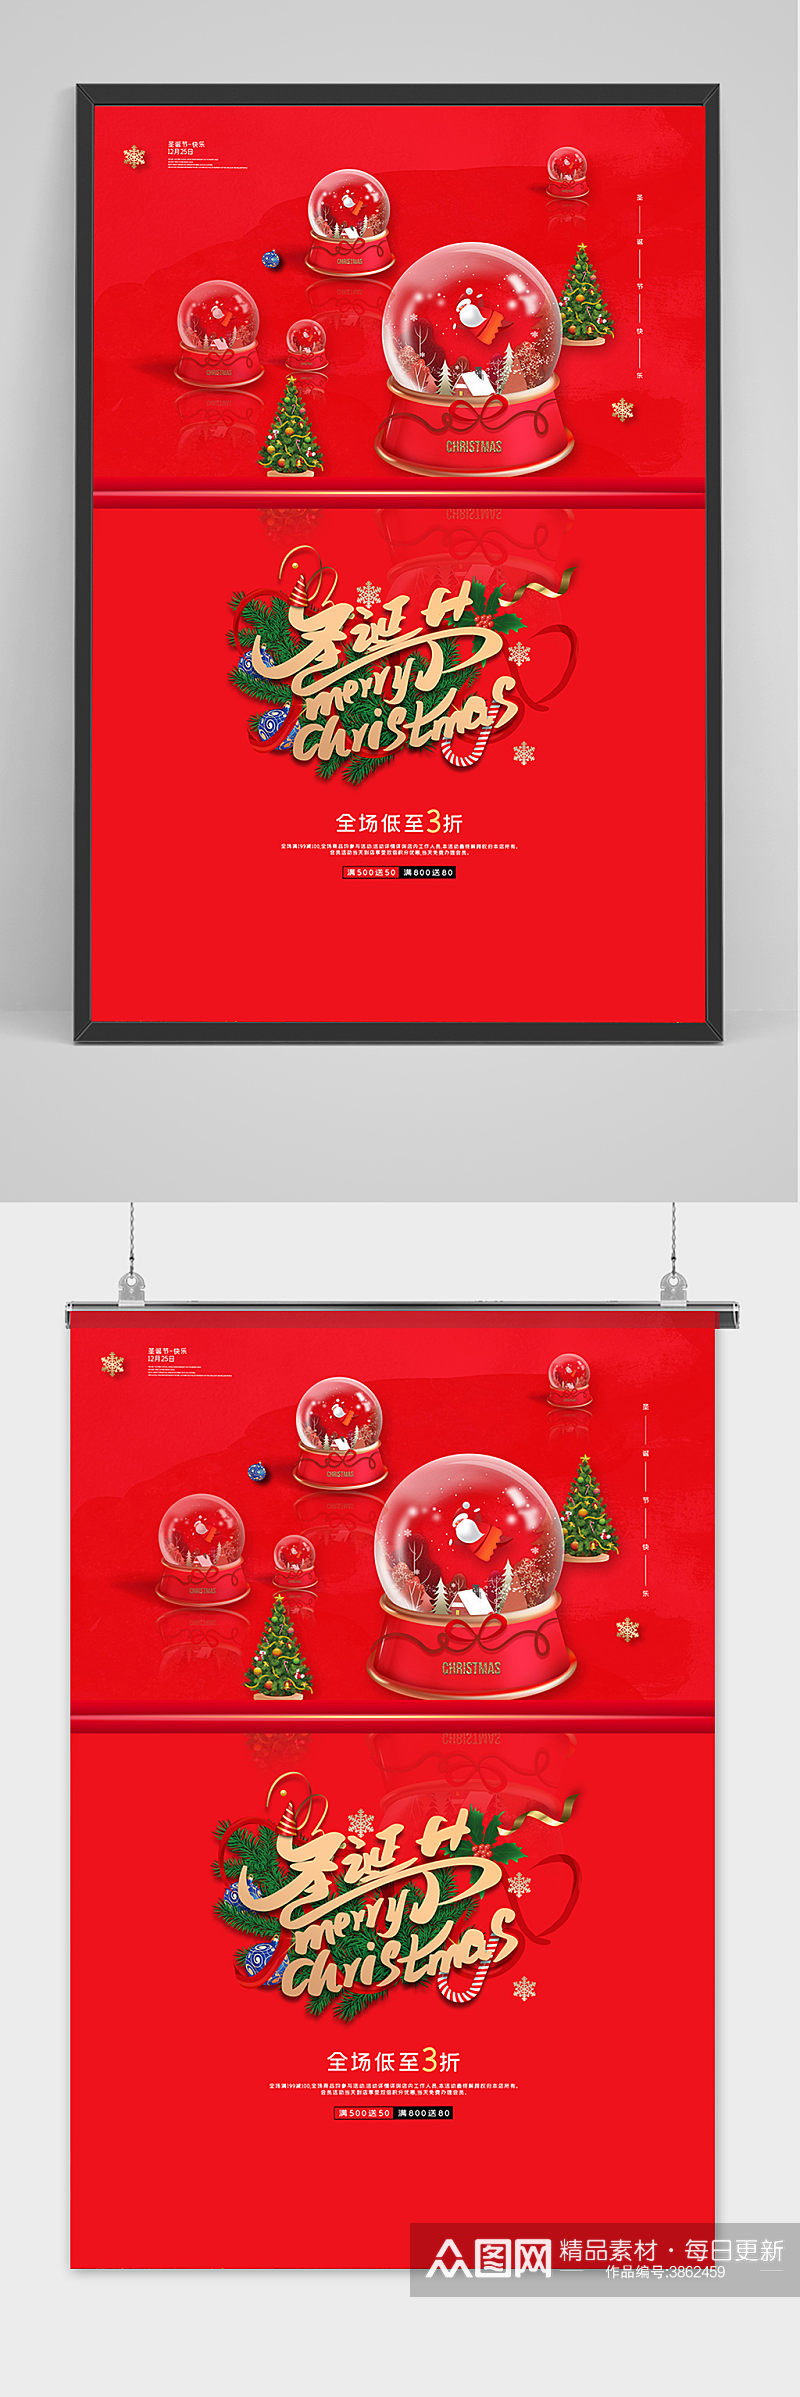 红色简约圣诞快乐圣诞节促销海报素材